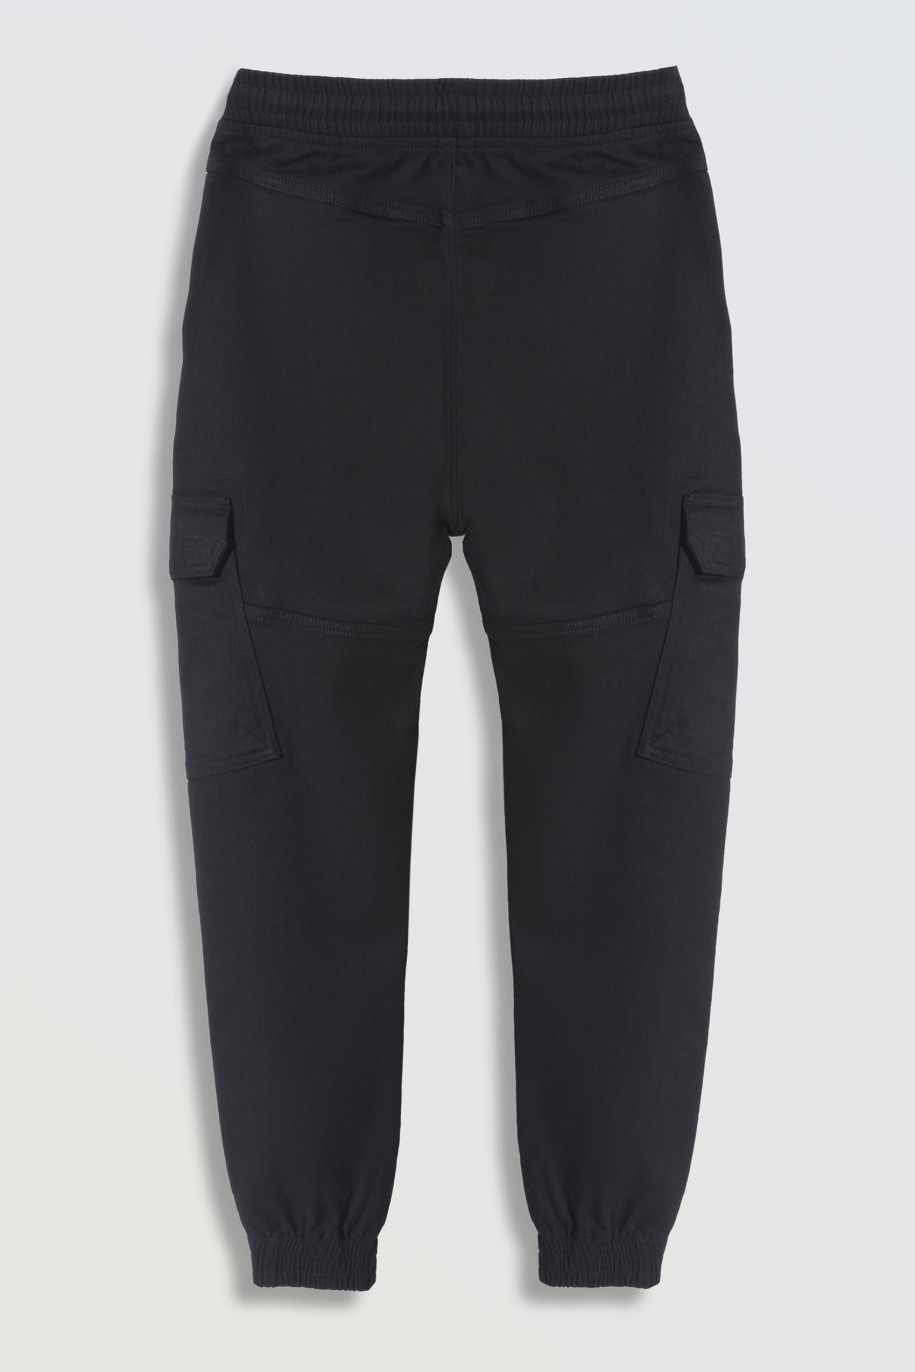 Szare spodnie typu bojówki z przestrzennymi kieszeniami - 46249